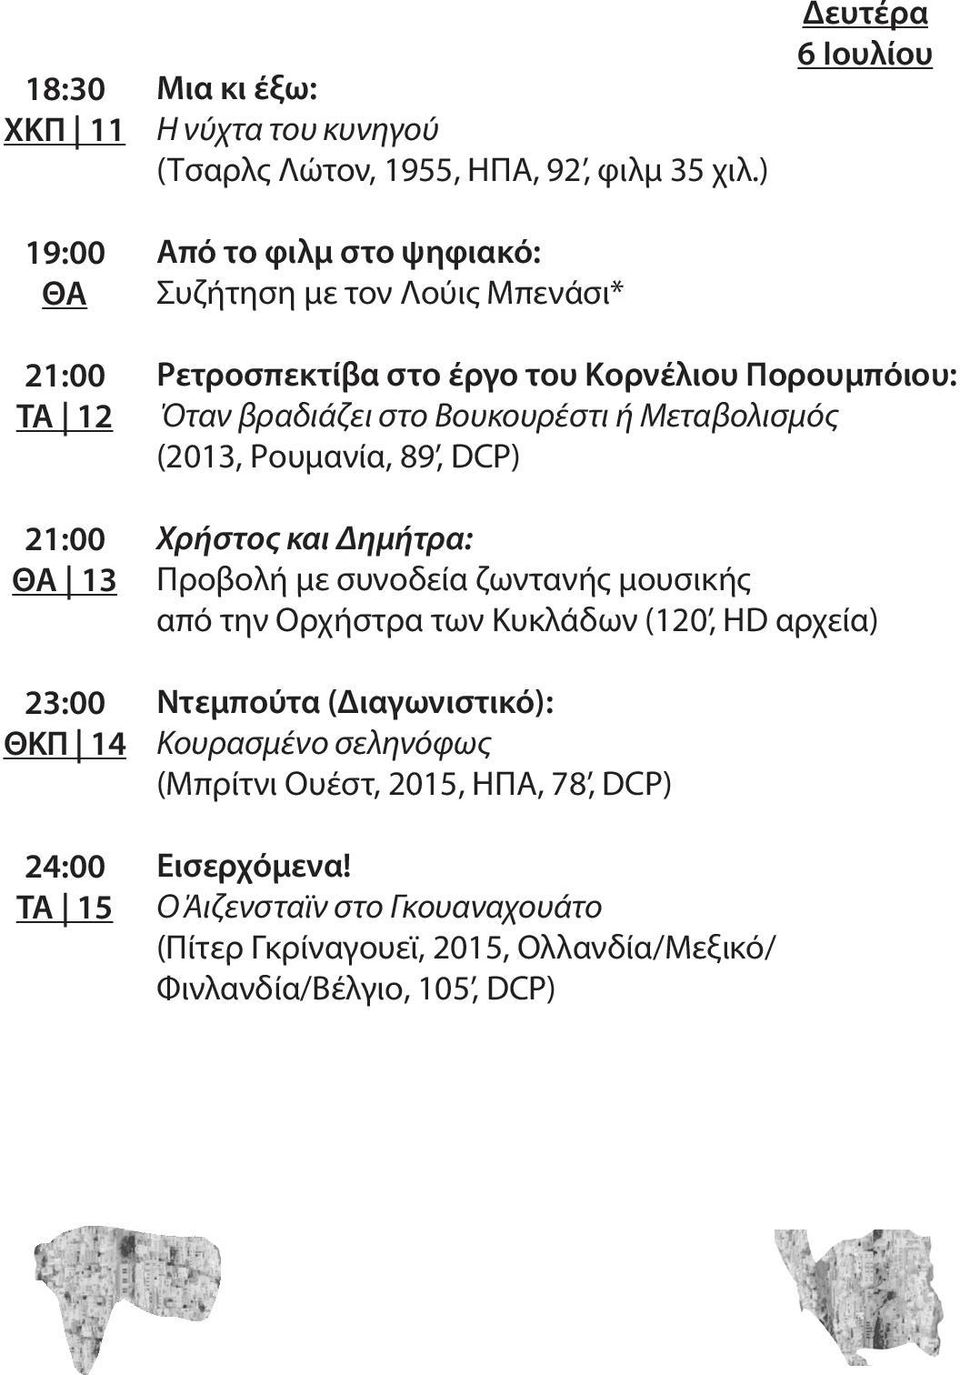 Μεταβολισμός (2013, Ρουμανία, 89, DCP) Χρήστος και Δημήτρα: Προβολή με συνοδεία ζωντανής μουσικής από την Ορχήστρα των Κυκλάδων (120, HD αρχεία) 23:00 ΘΚΠ 14